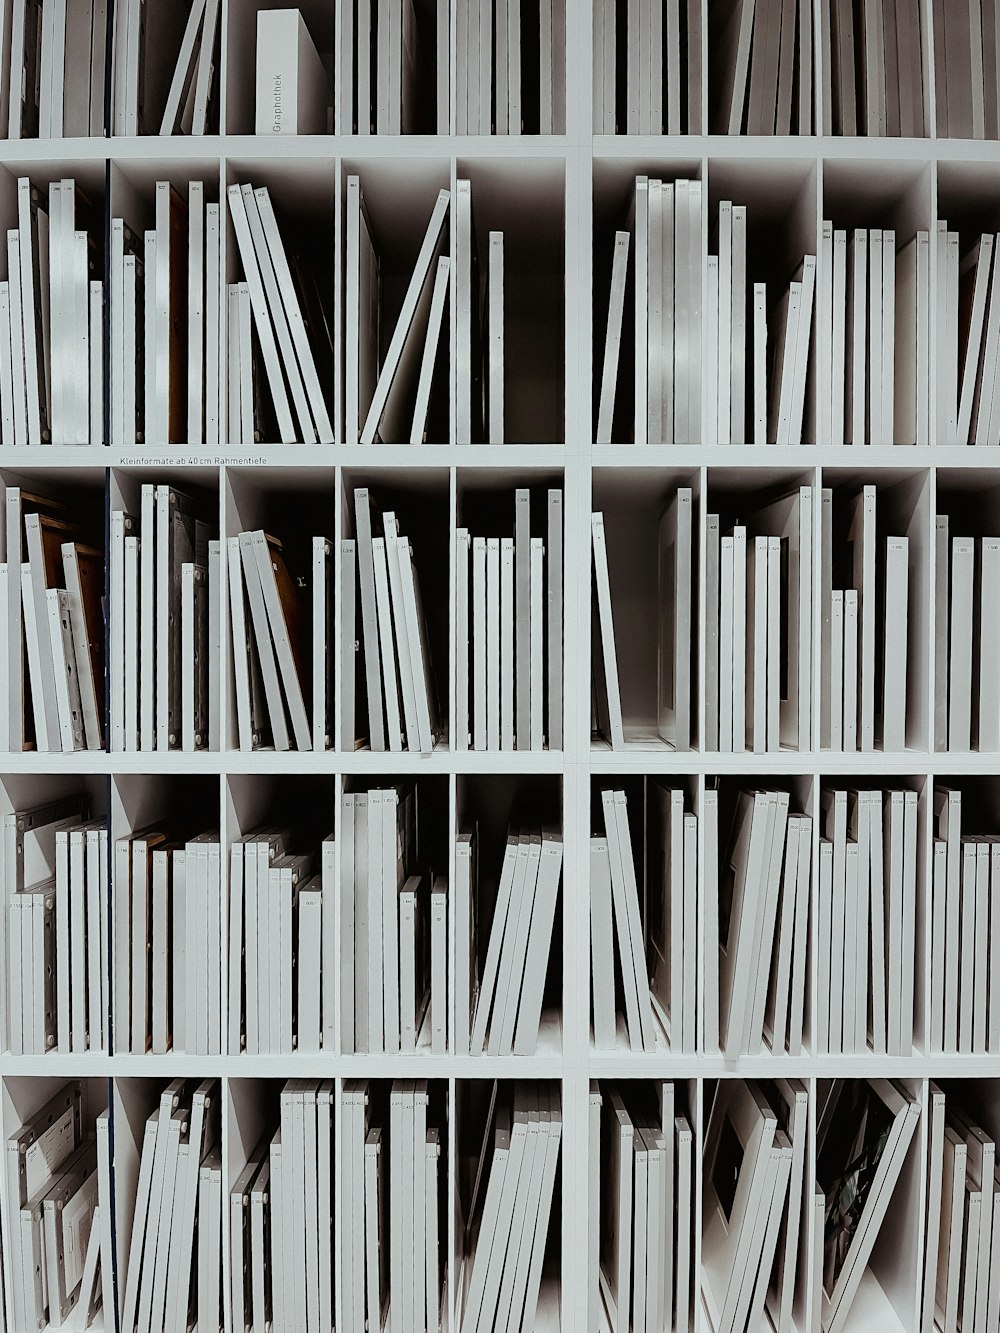 ein Bücherregal gefüllt mit vielen weißen Büchern